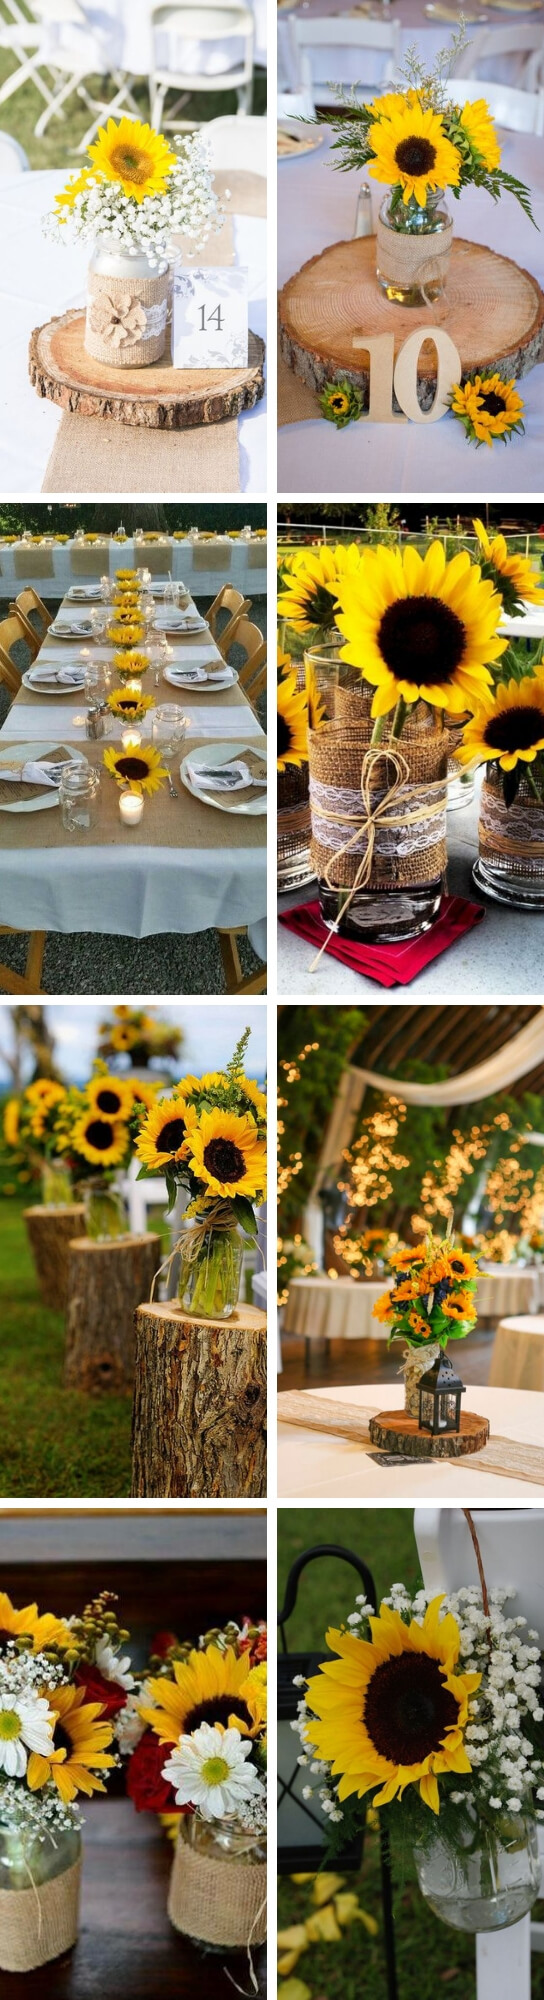 Sunflower Wedding Centerpiece Ideas | Creative & Rustic Backyard Wedding Ideas For Summer & Fall